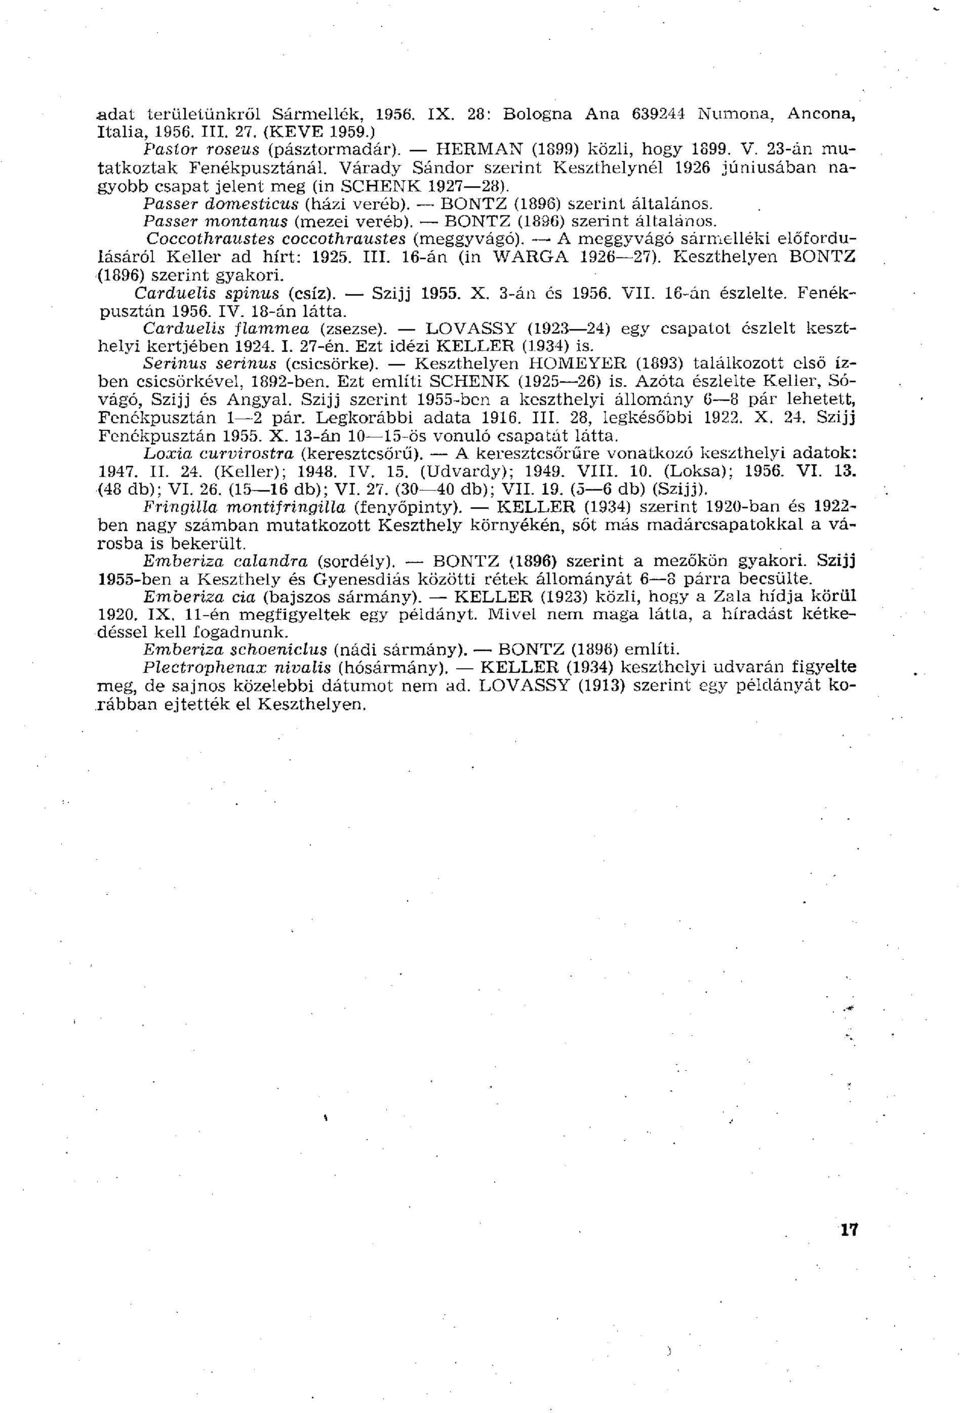 Passer montanus (mezei veréb). BONTZ (1896) szerint általános. Coccothraustes coccothraustes (meggyvágó). > A meggyvágó sármelléki előfordulásáról Keller ad hírt: 1925. III. 16-án (in WARGA 1926 27).